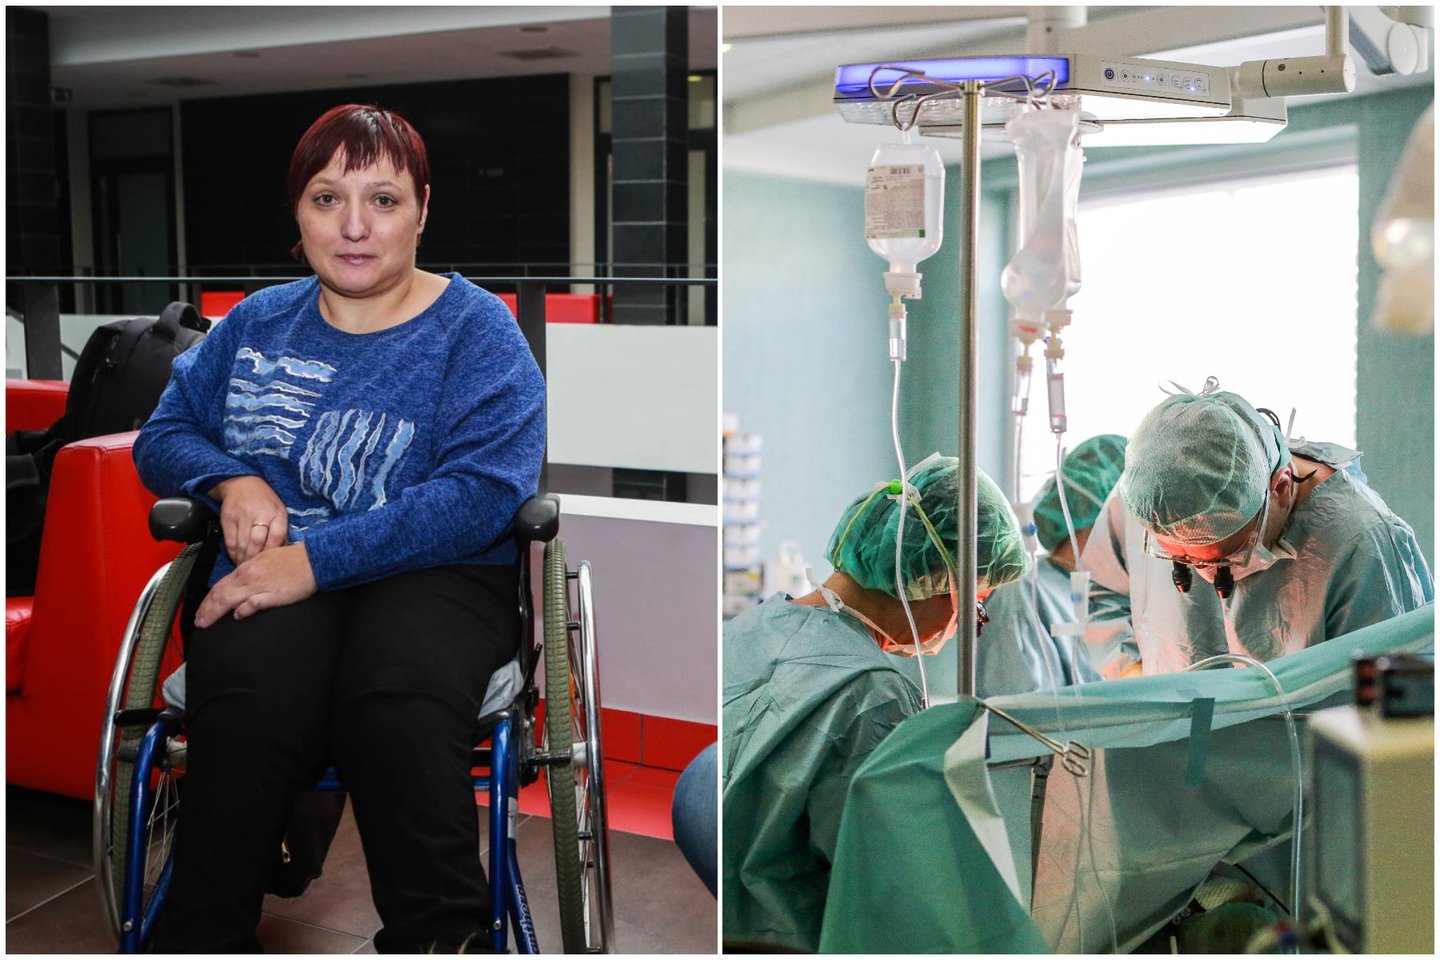 Teismo sprendimu iš Lazdijų ligoninės sutuoktiniams Jankauskams už slaptą sterilizaciją priteista bendra 31 tūkst. eurų neturtinė žala.<br> lrytas.lt koliažas